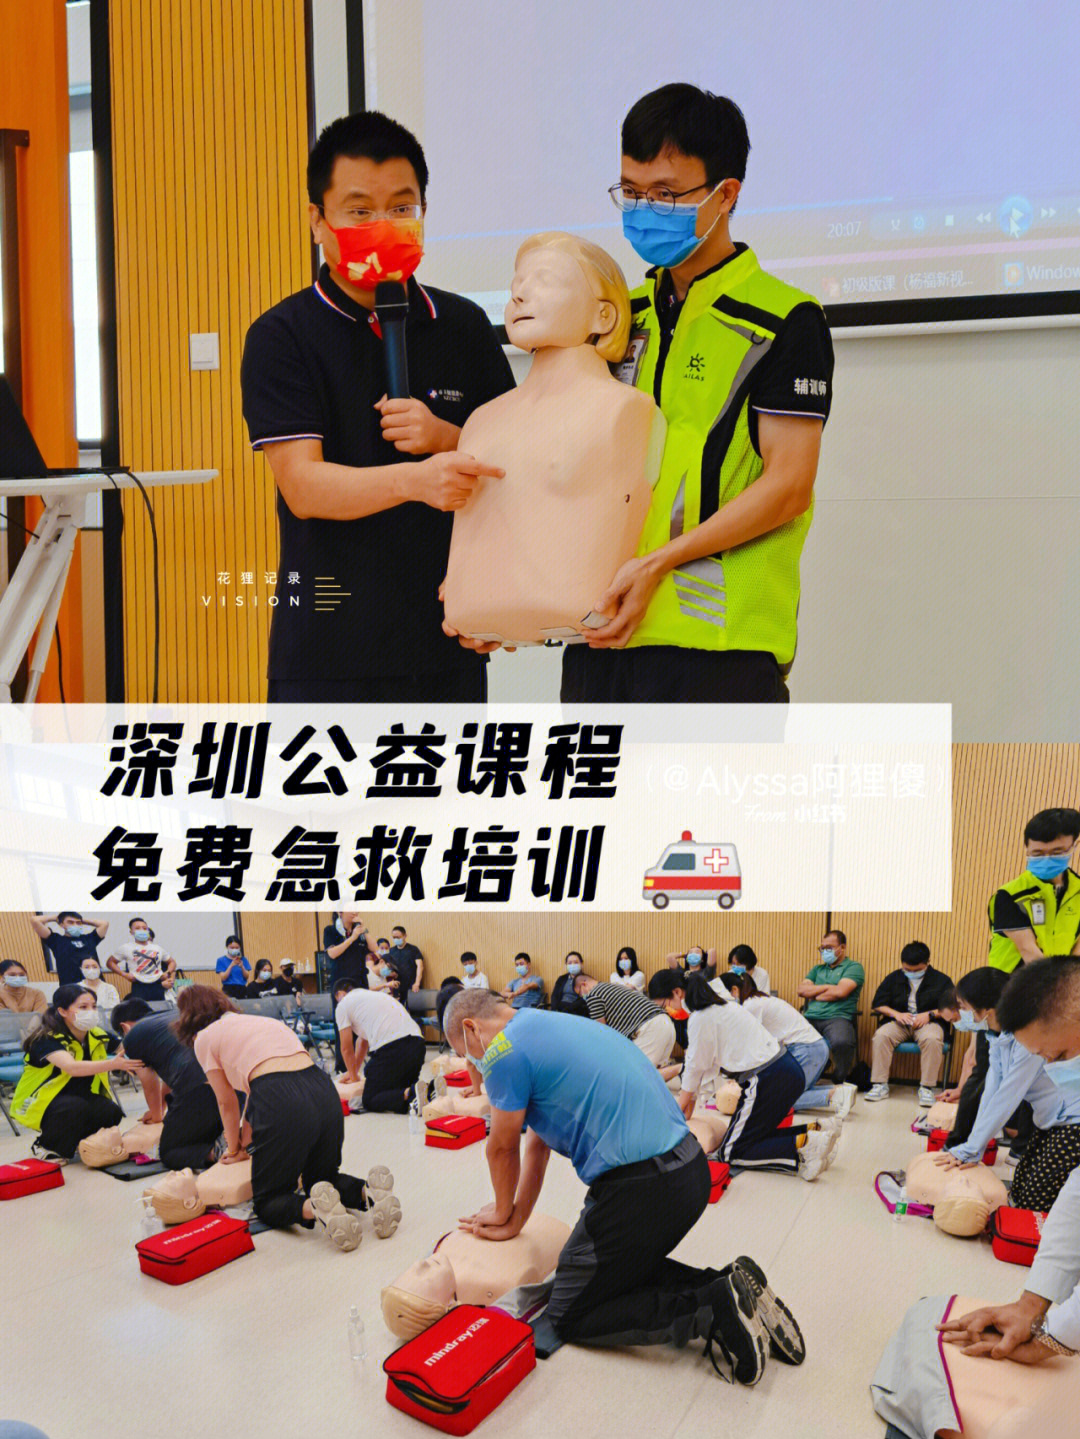 深圳超棒公益课程6015cpr急救培训·全纪录